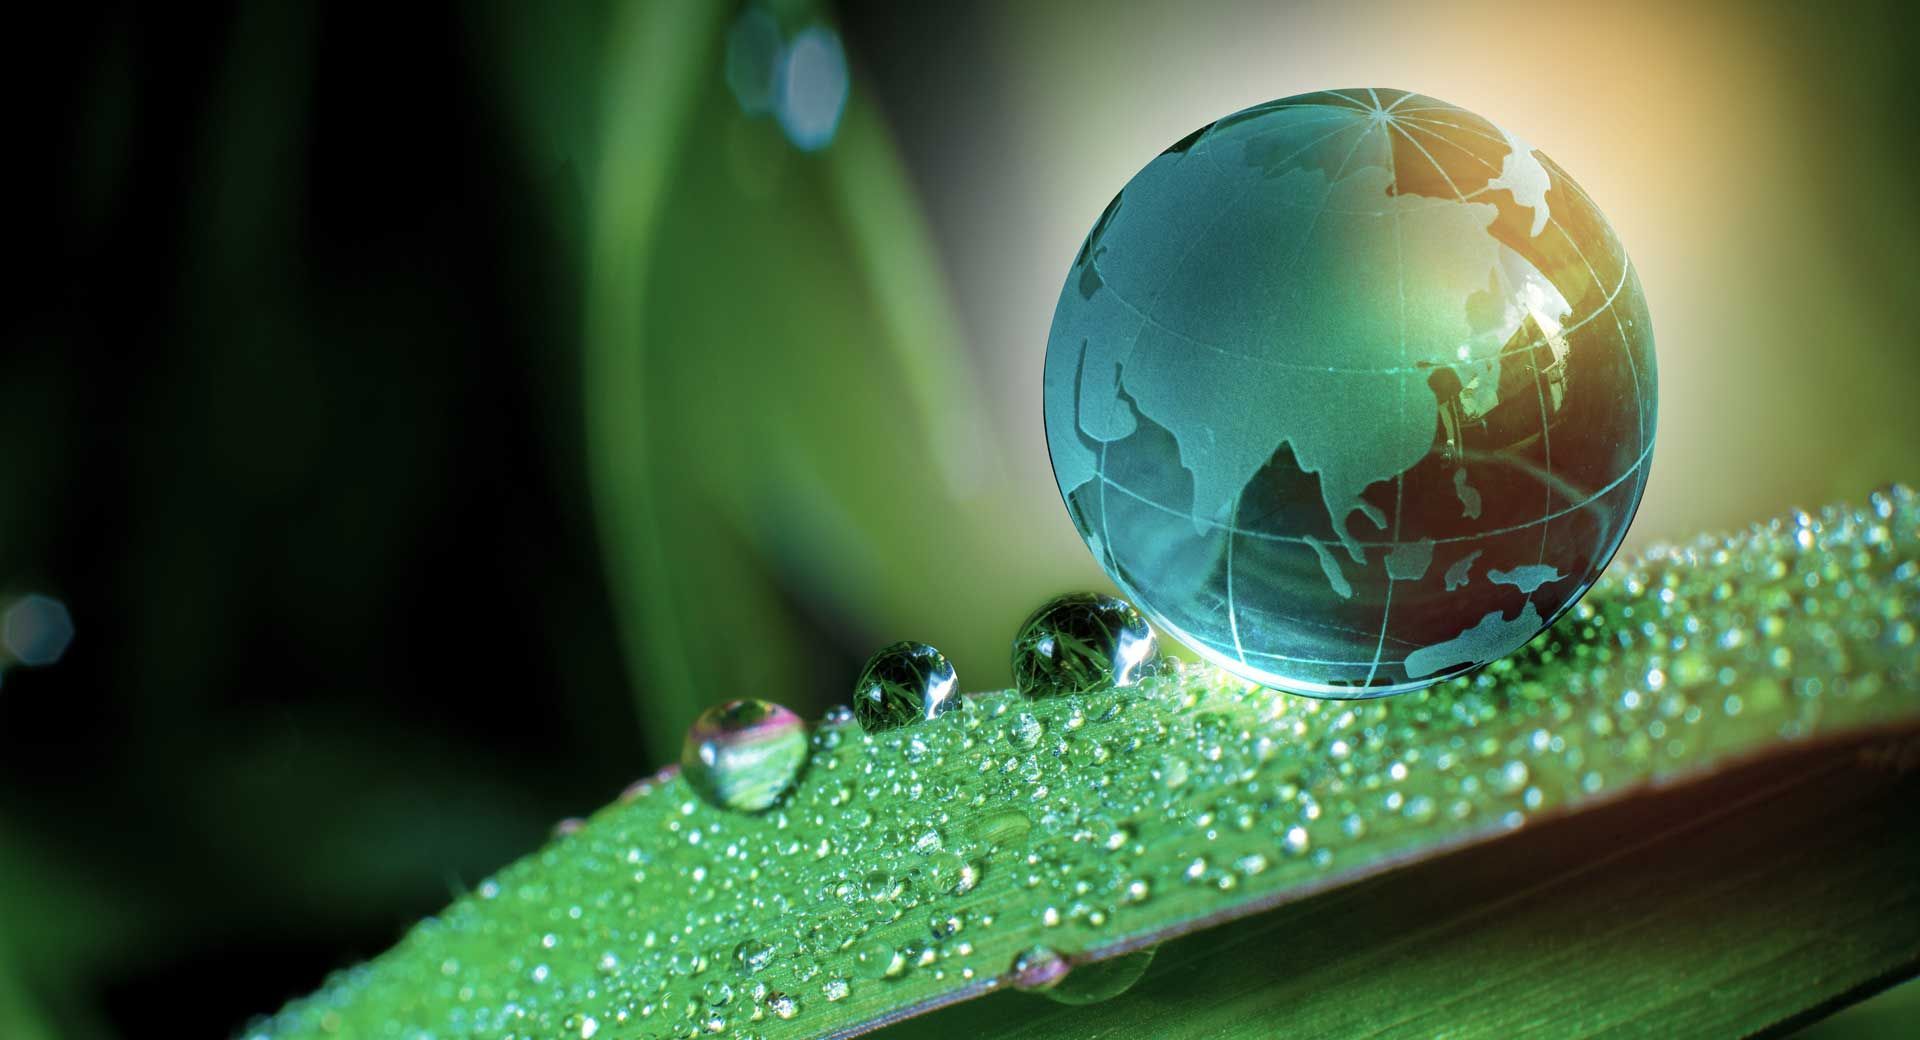 Représentation d'un globe terrestre miniature sur une plante parsemée de gouttes d'eau